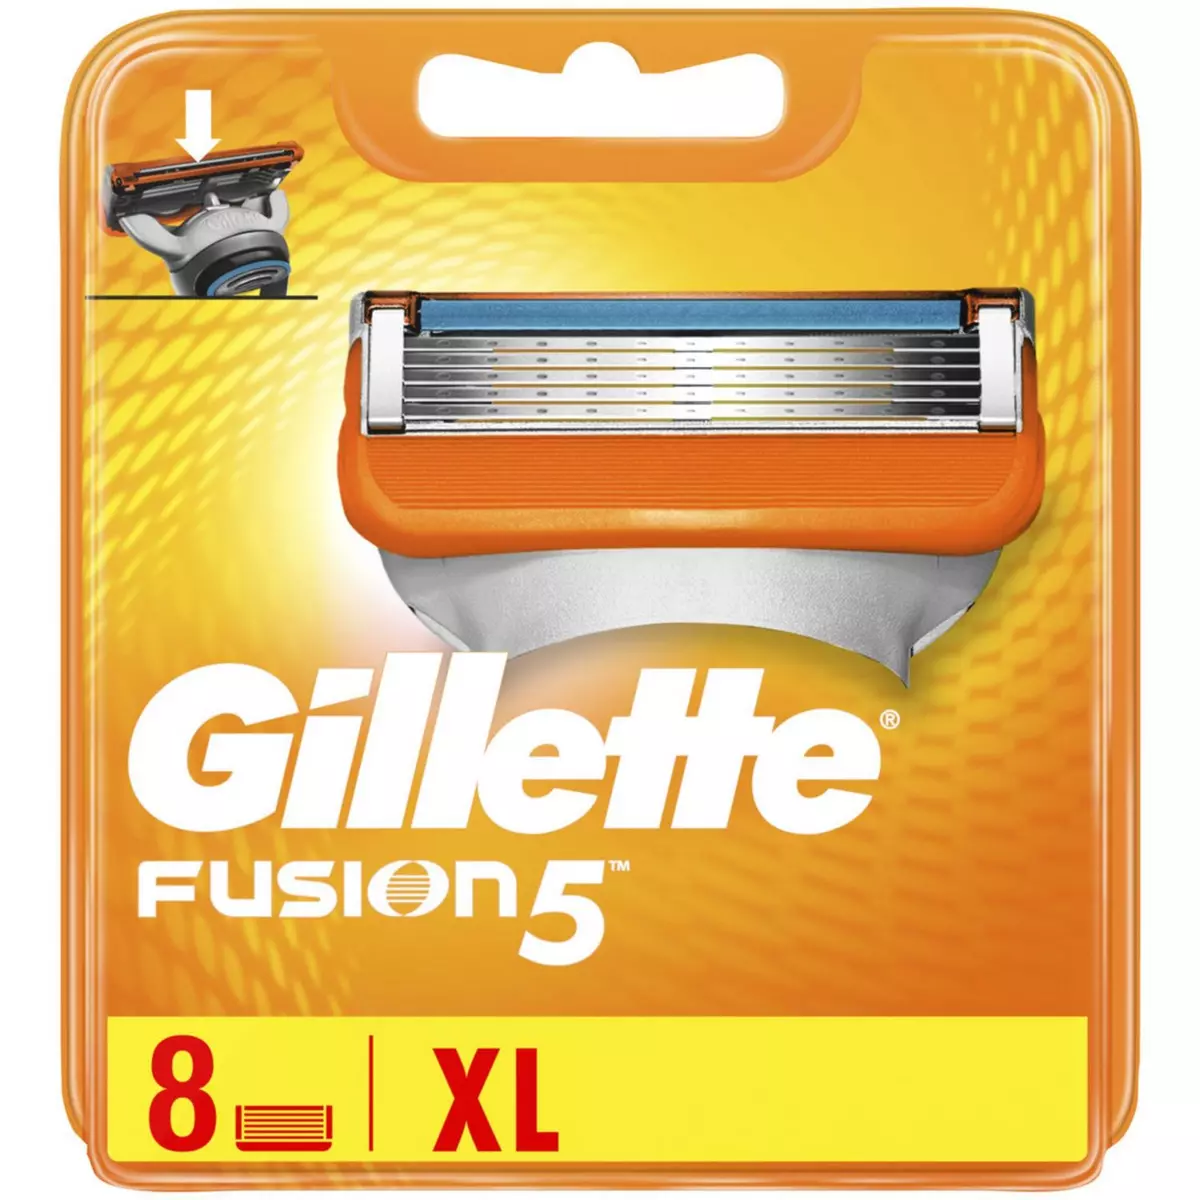 GILLETTE Fusion 5 recharge lames de rasoir 8 recharges